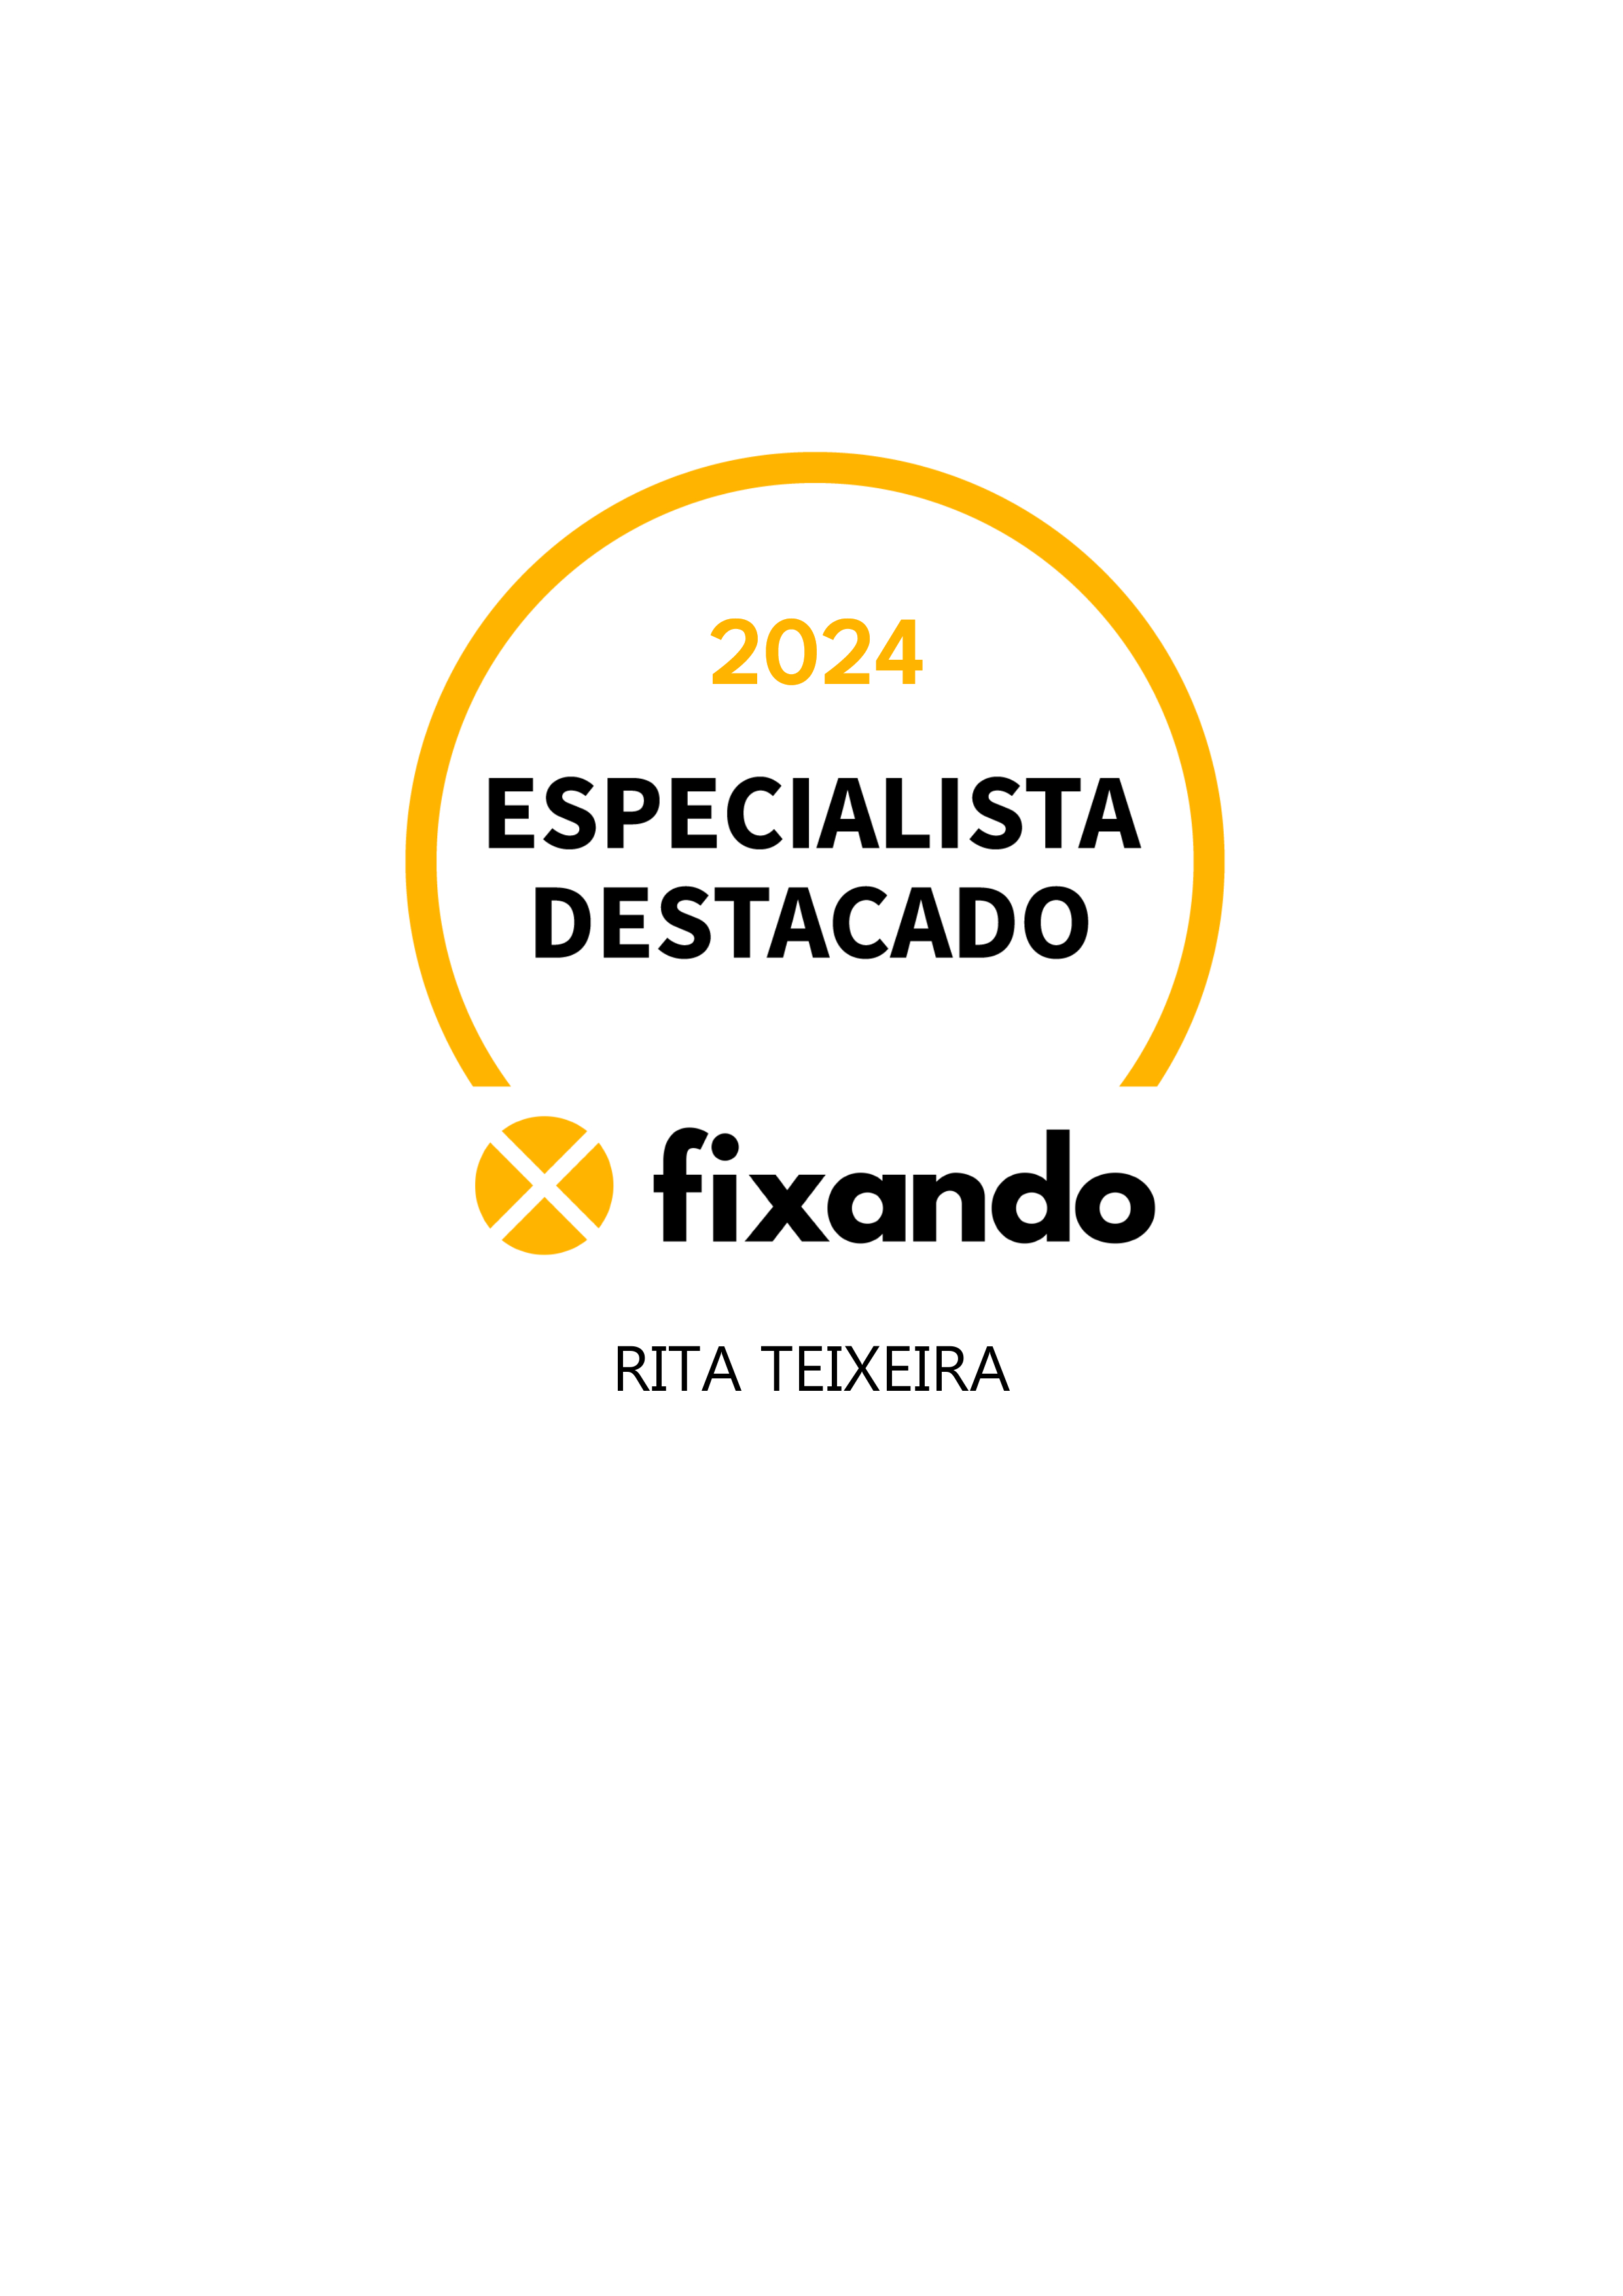 Rita Teixeira - Vila Nova de Gaia - Design de Logotipos